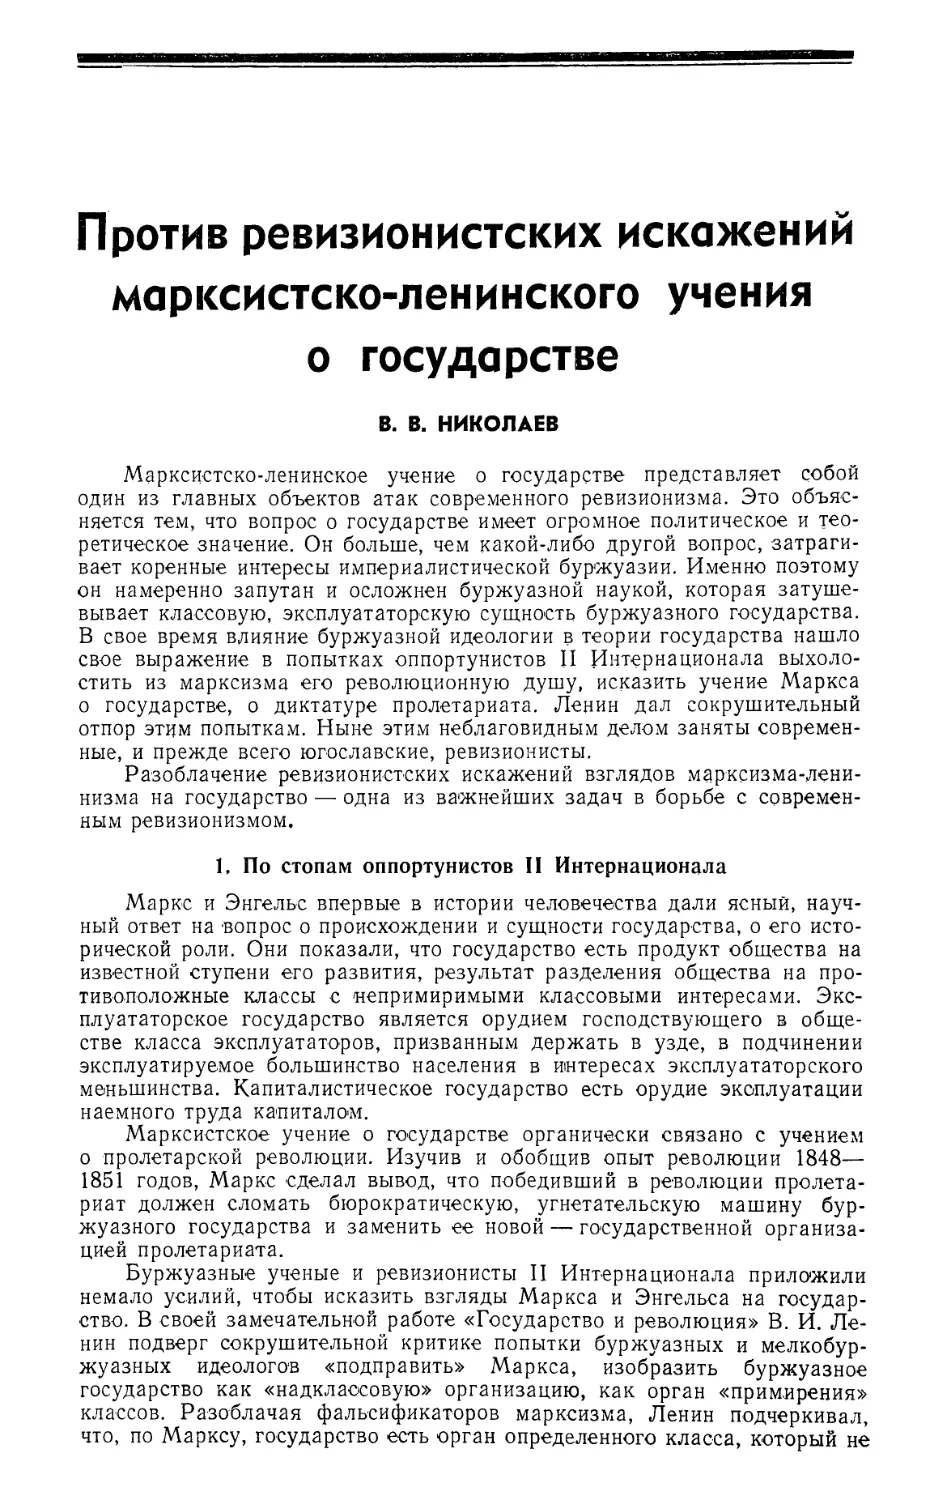 В. В. Николаев — Против ревизионистских искажений марксистско-ленинского учения о государстве